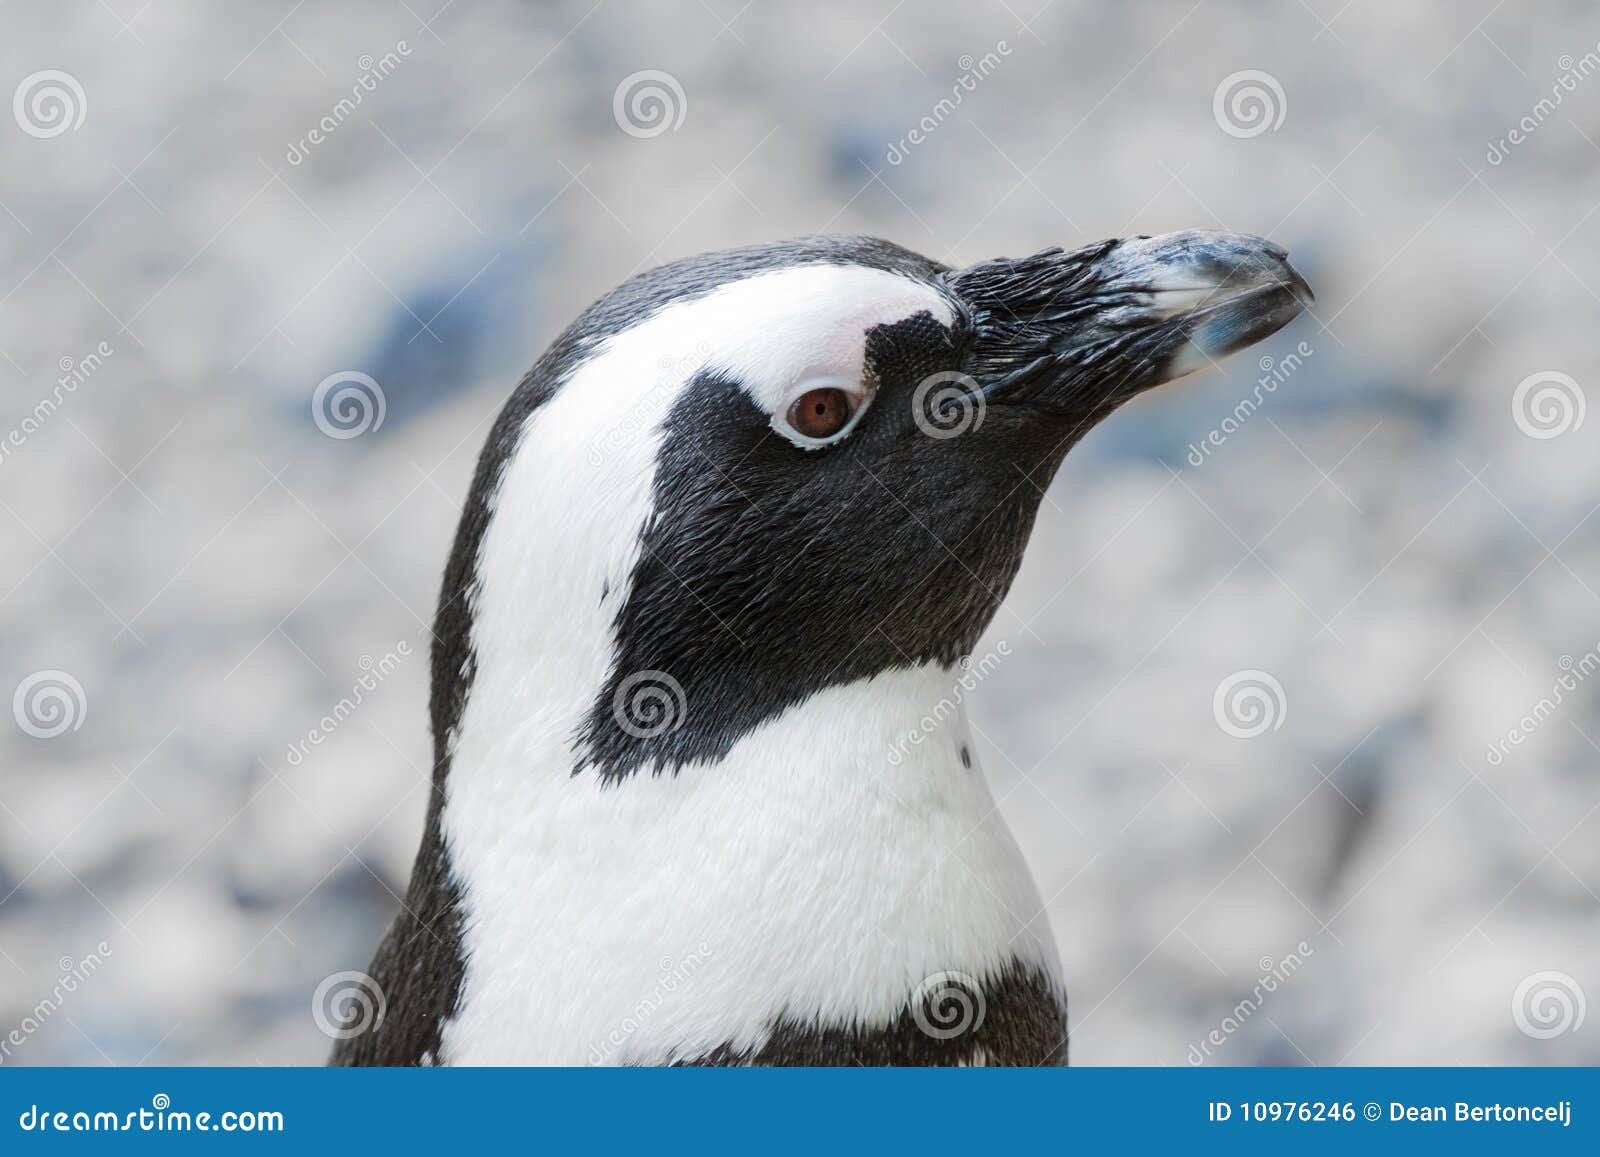 blackfoot penguin